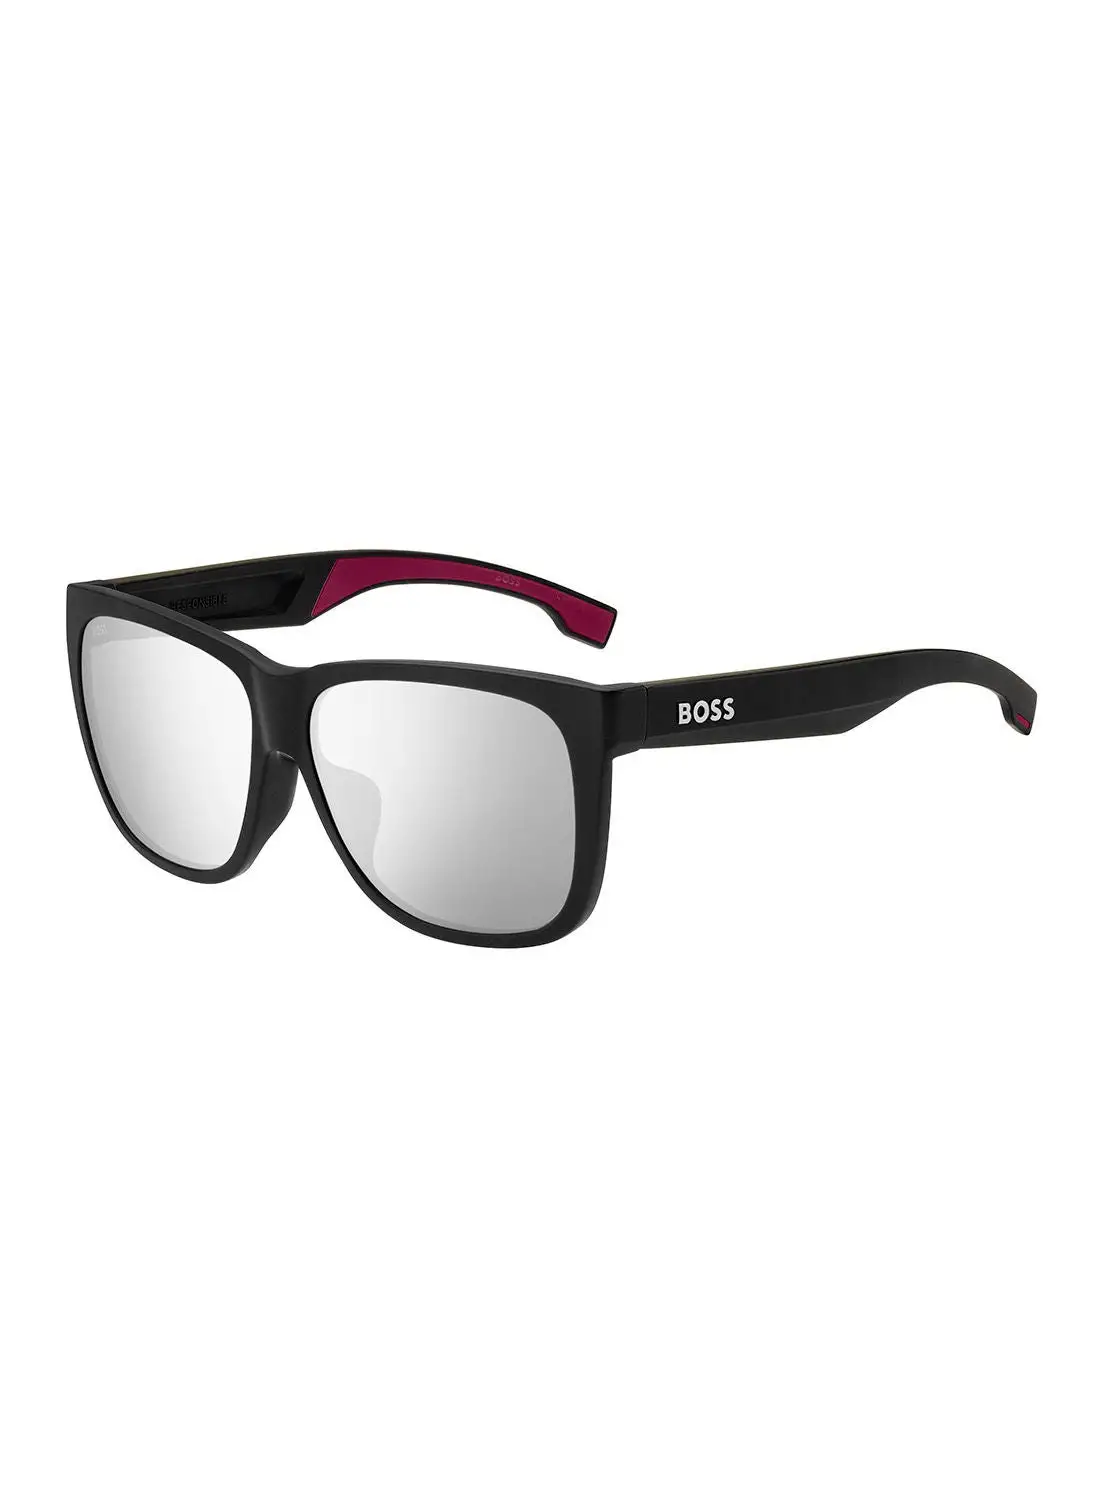 HUGO BOSS Men's UV Protection Square Sunglasses - Boss 1453/F/S Mt Blkbur 61 - Lens Size: 61 Mm